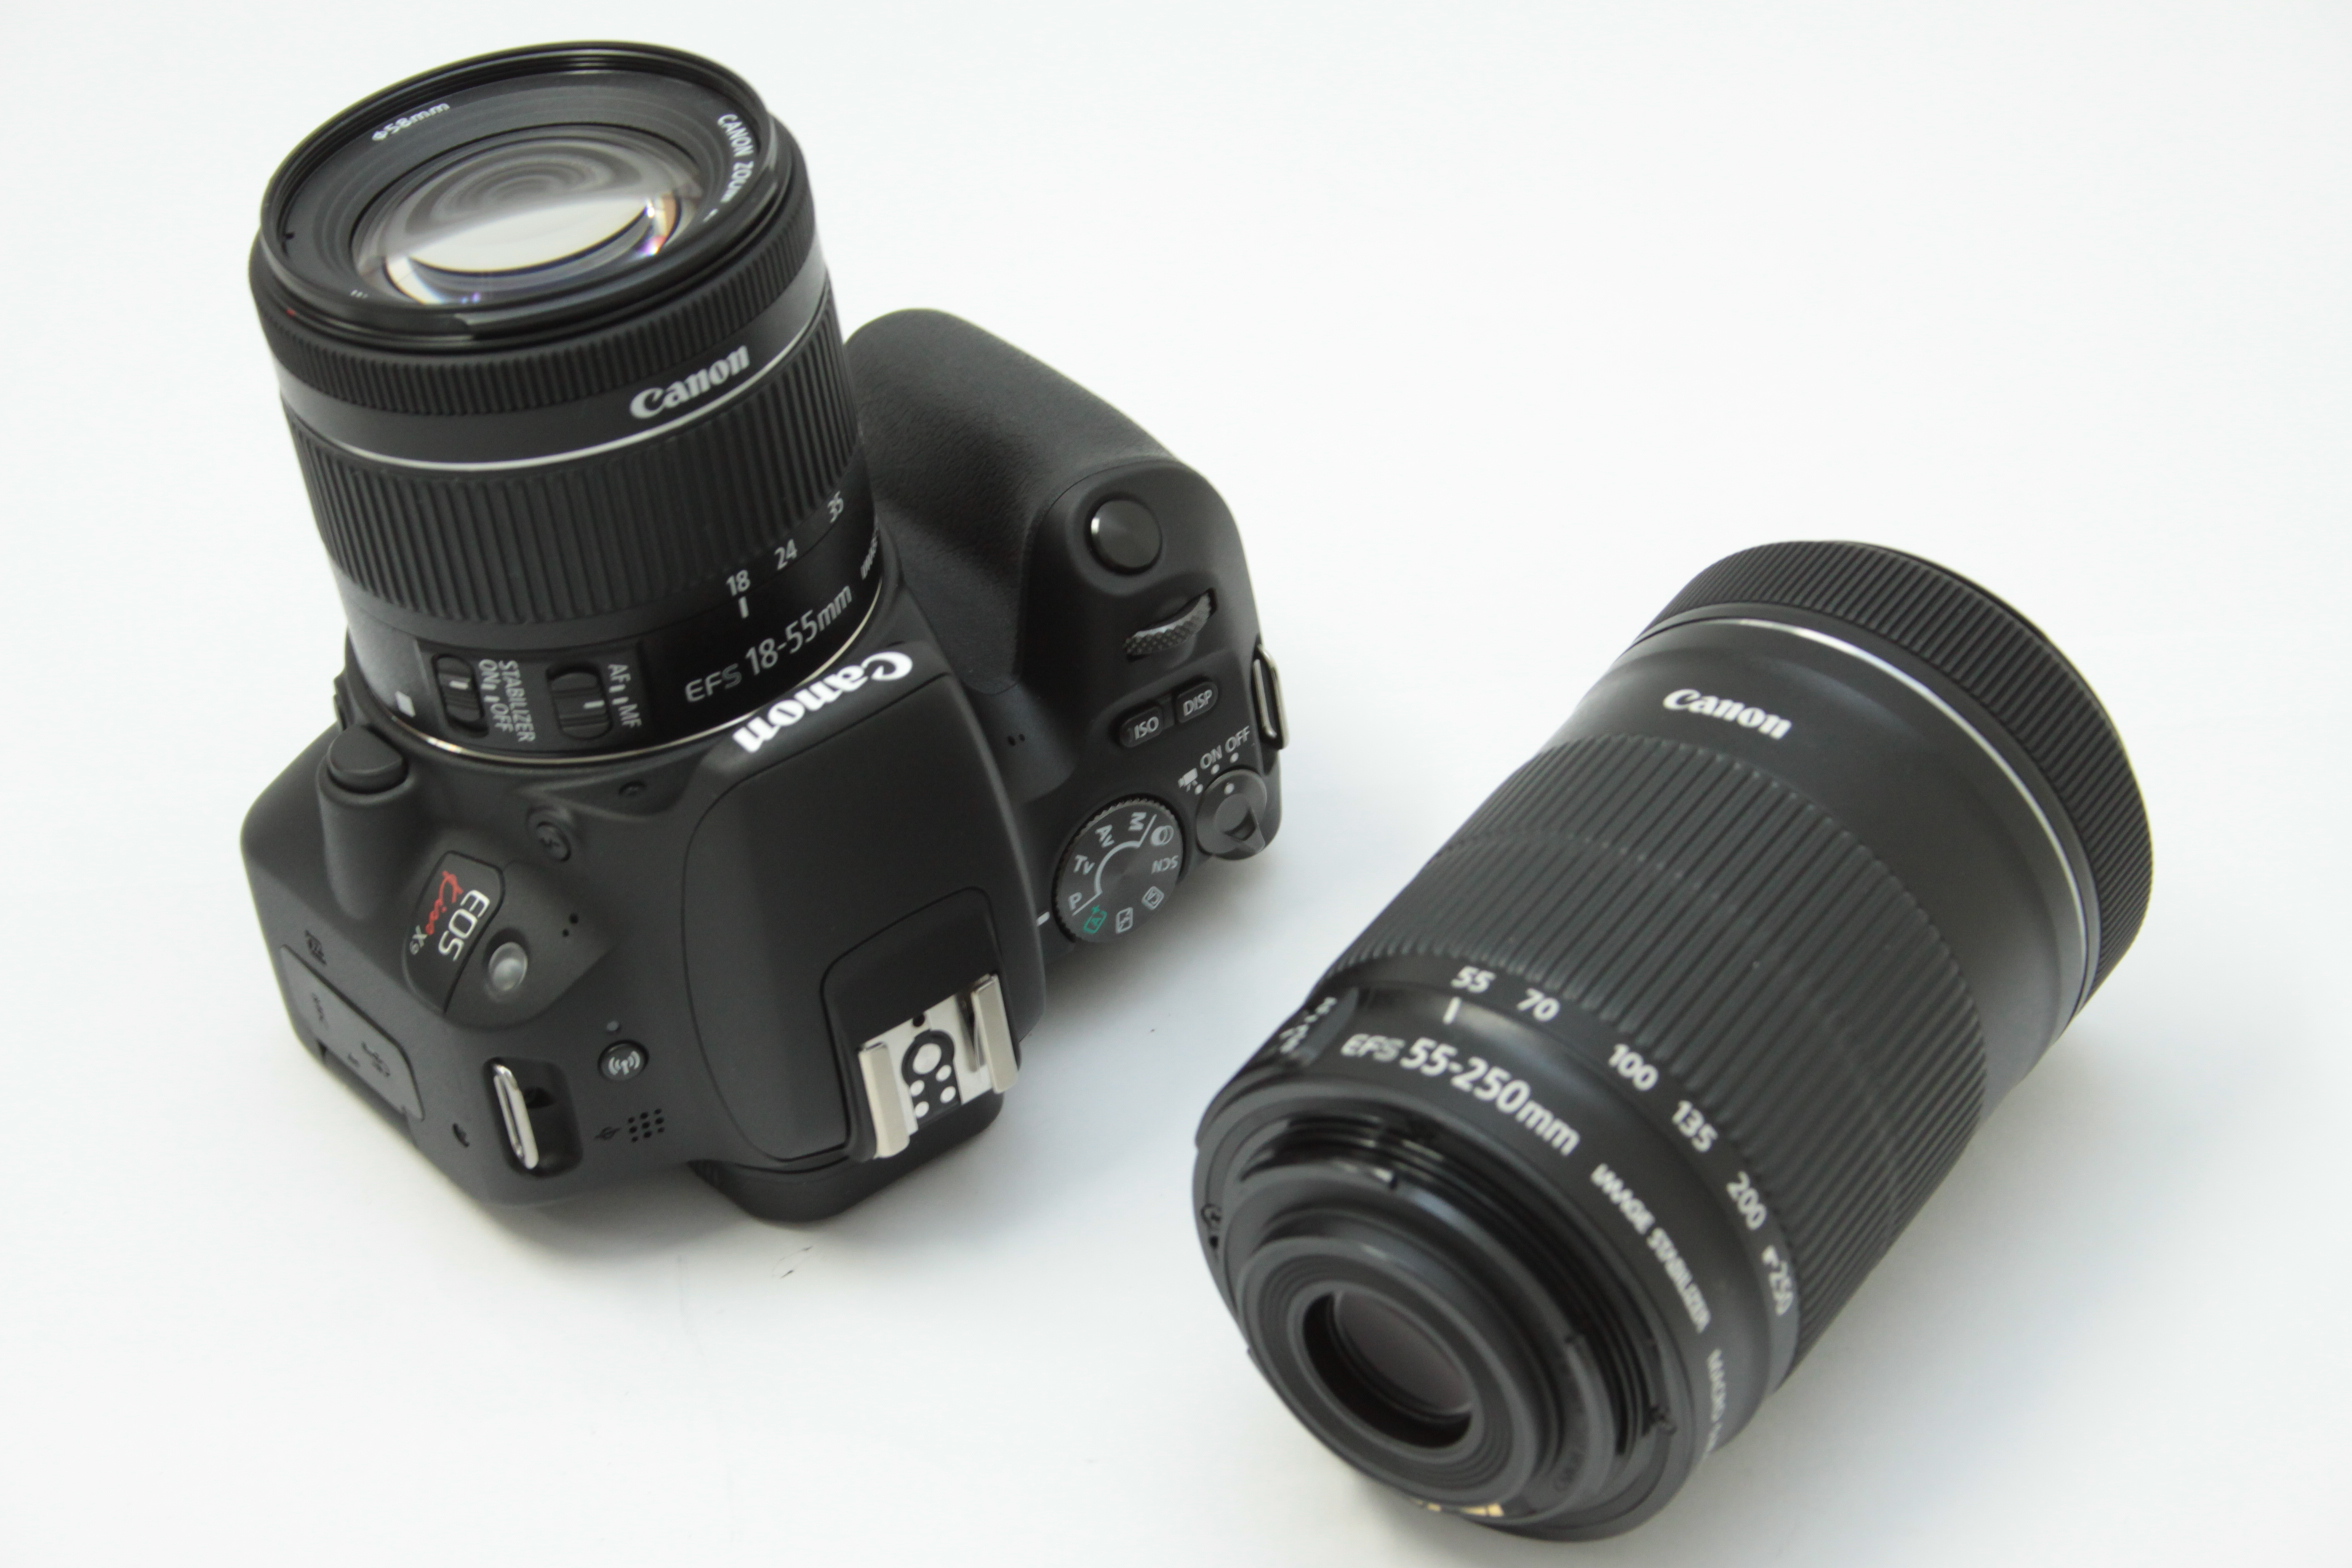 Canon EOS KISS X9ダブルズームキット 買取ました｜一眼レフカメラの最新買取実績｜買取ステーション